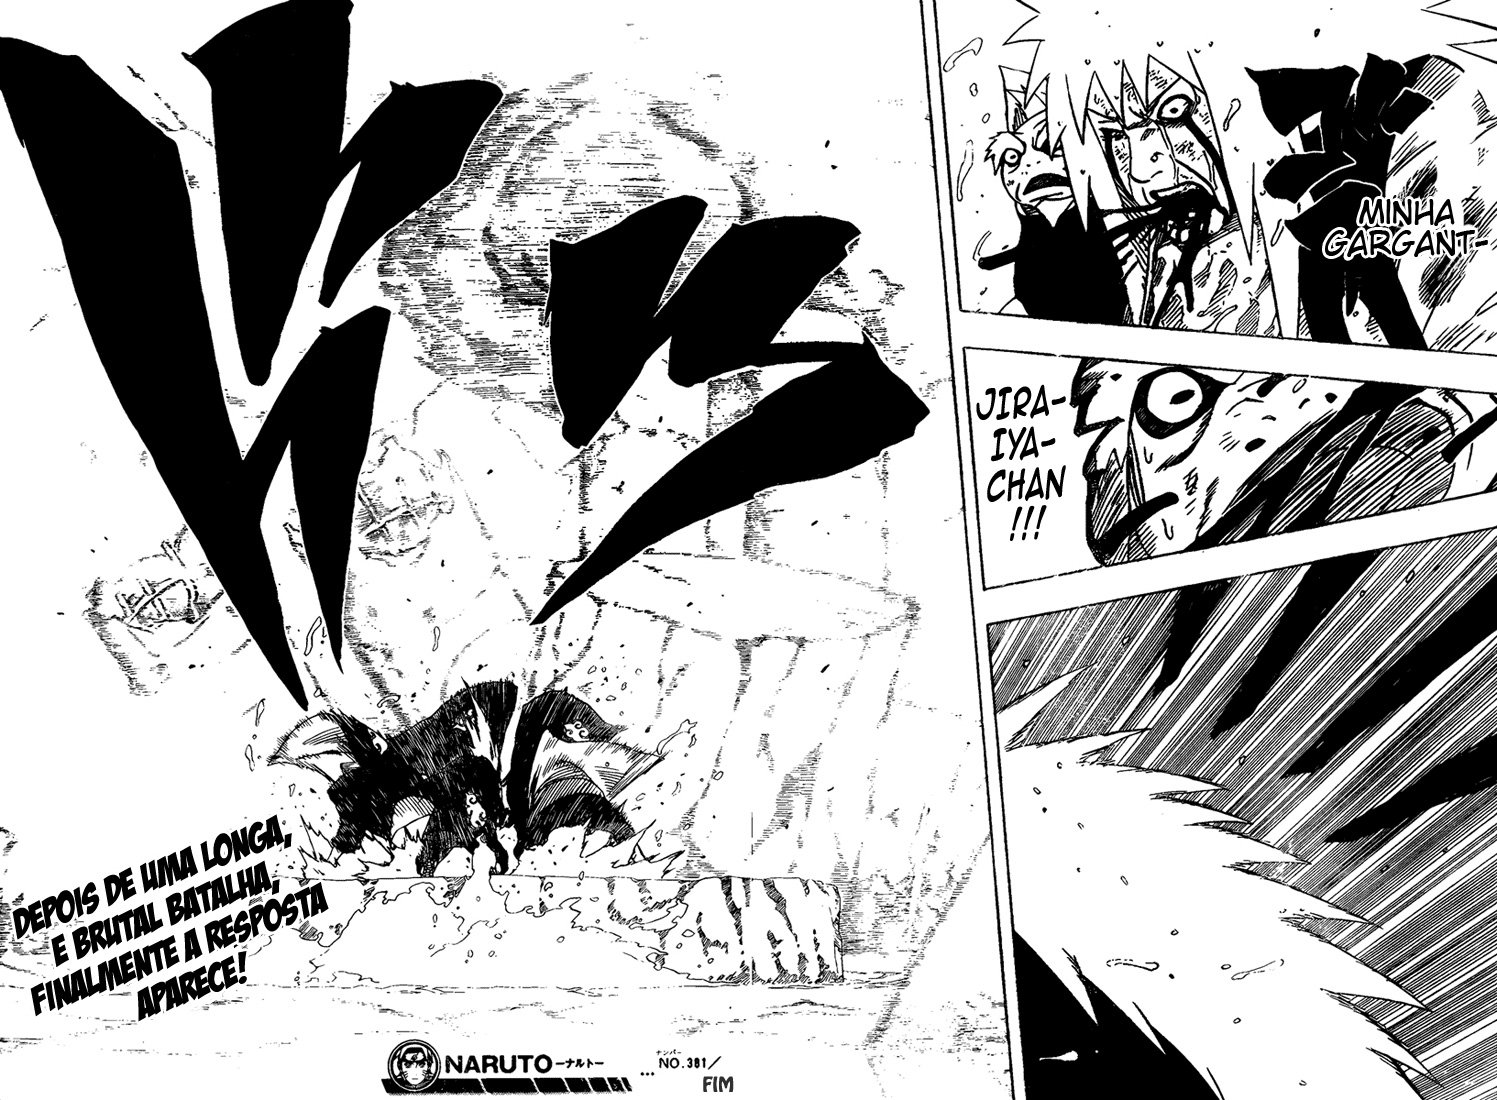 Deva não usou seus poderes contra Jiraiya? Ninguém em Konoha sabia dos poderes dele? - Página 3 17